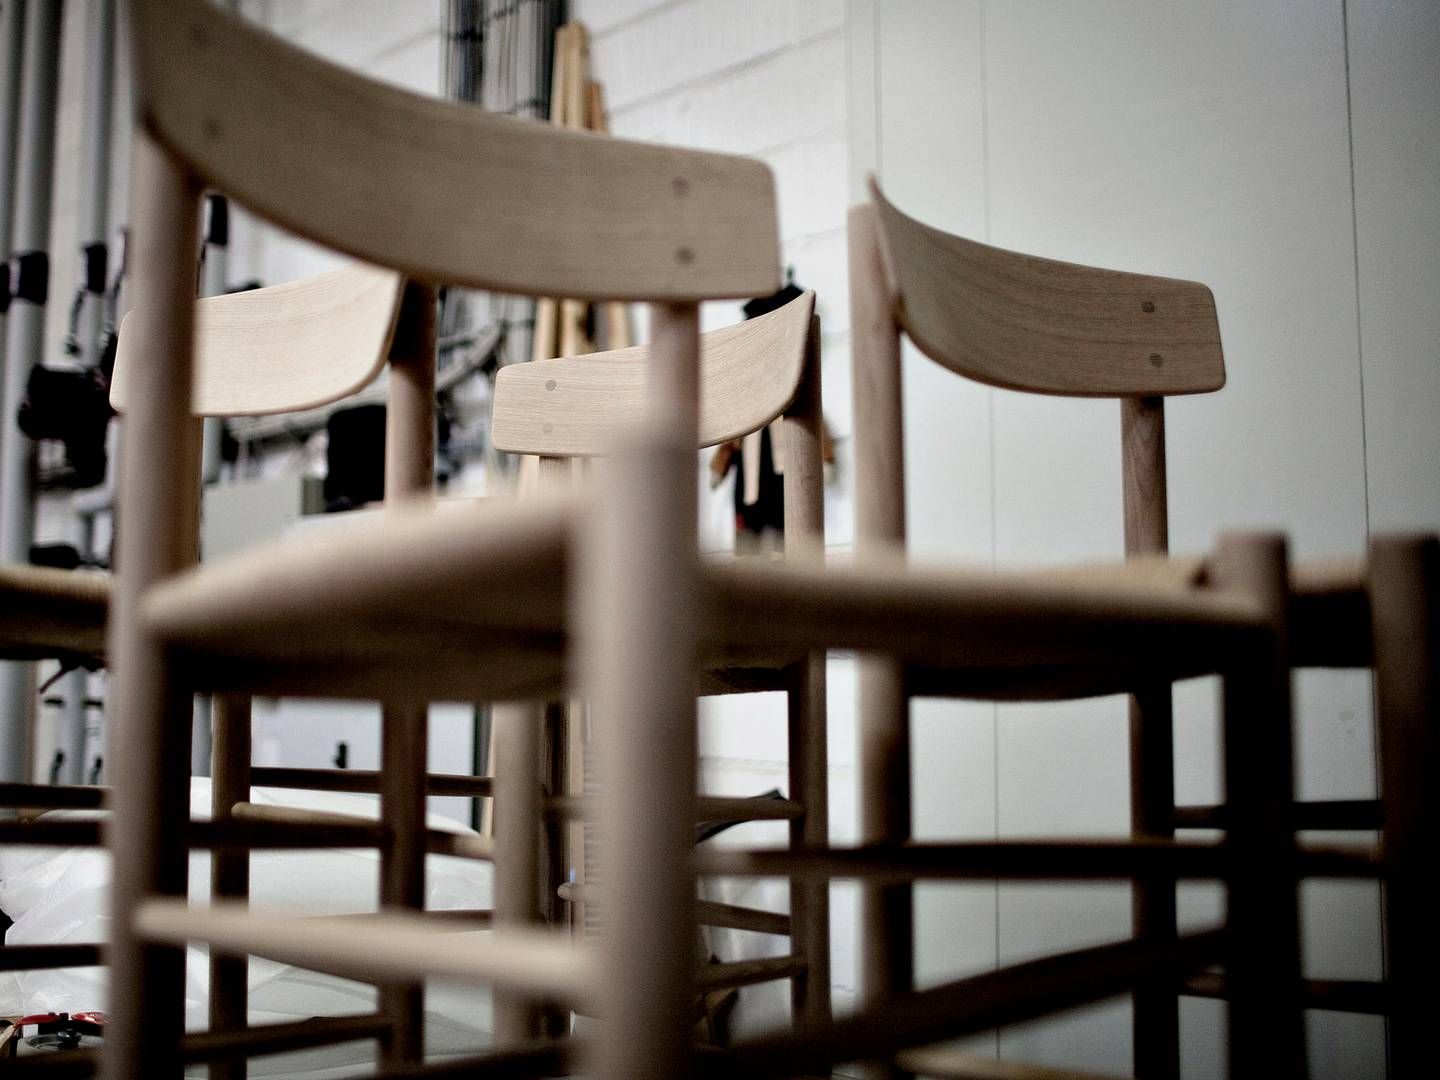 Møbelproducenten Fredericia Furniture producerer møbler af blandt andre Børge Mogensen og Hans J. Wegner. | Foto: Joachim Adrian/Politiken/Ritzau Scanpix